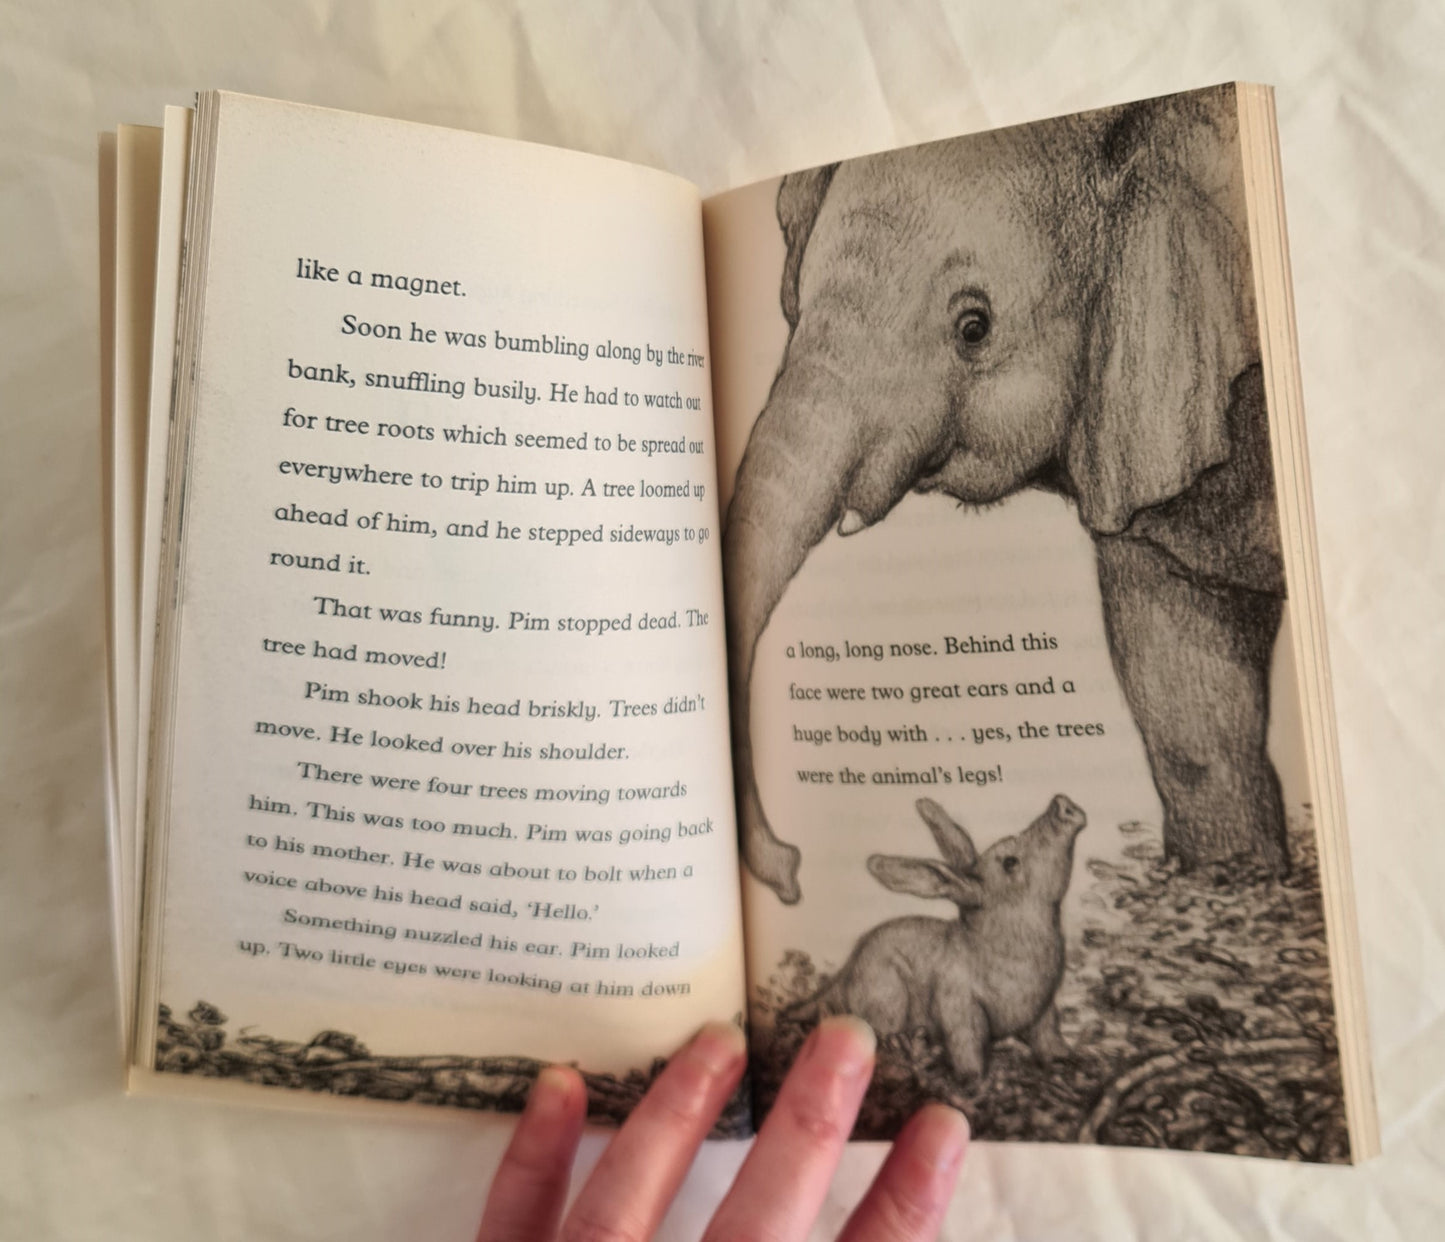 The Aardvark Who Wasn’t Sure by Jill Tomlinson